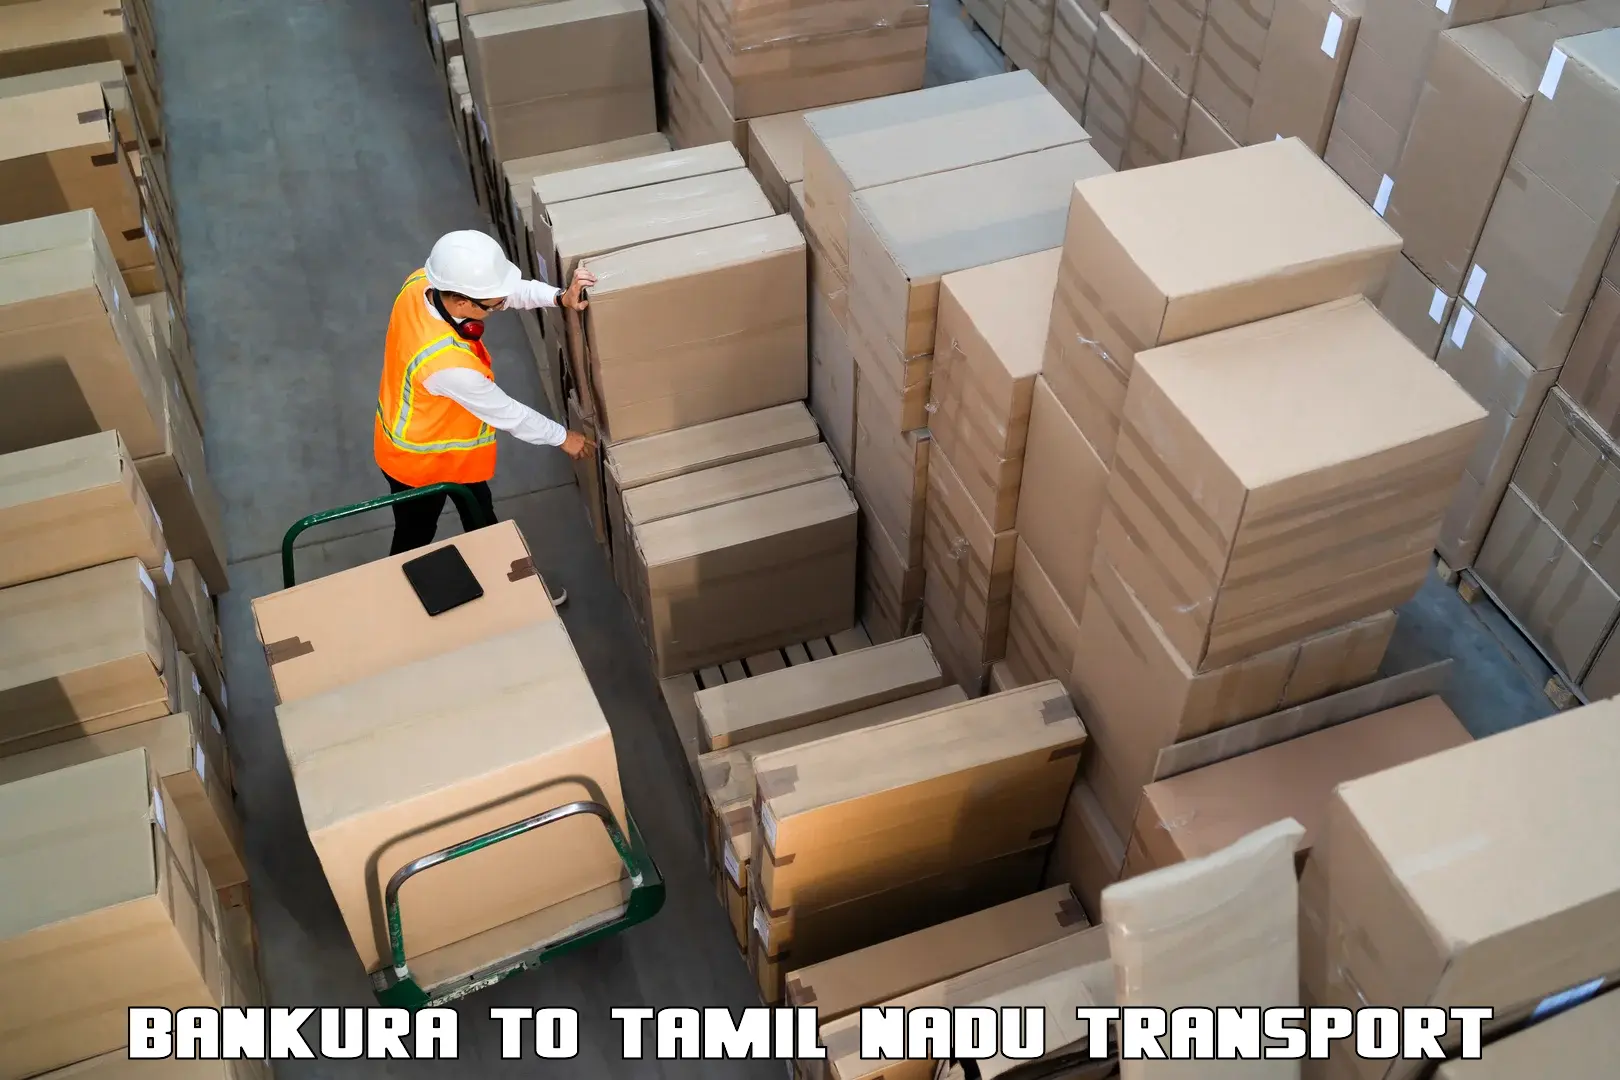 Daily parcel service transport Bankura to Kulithalai